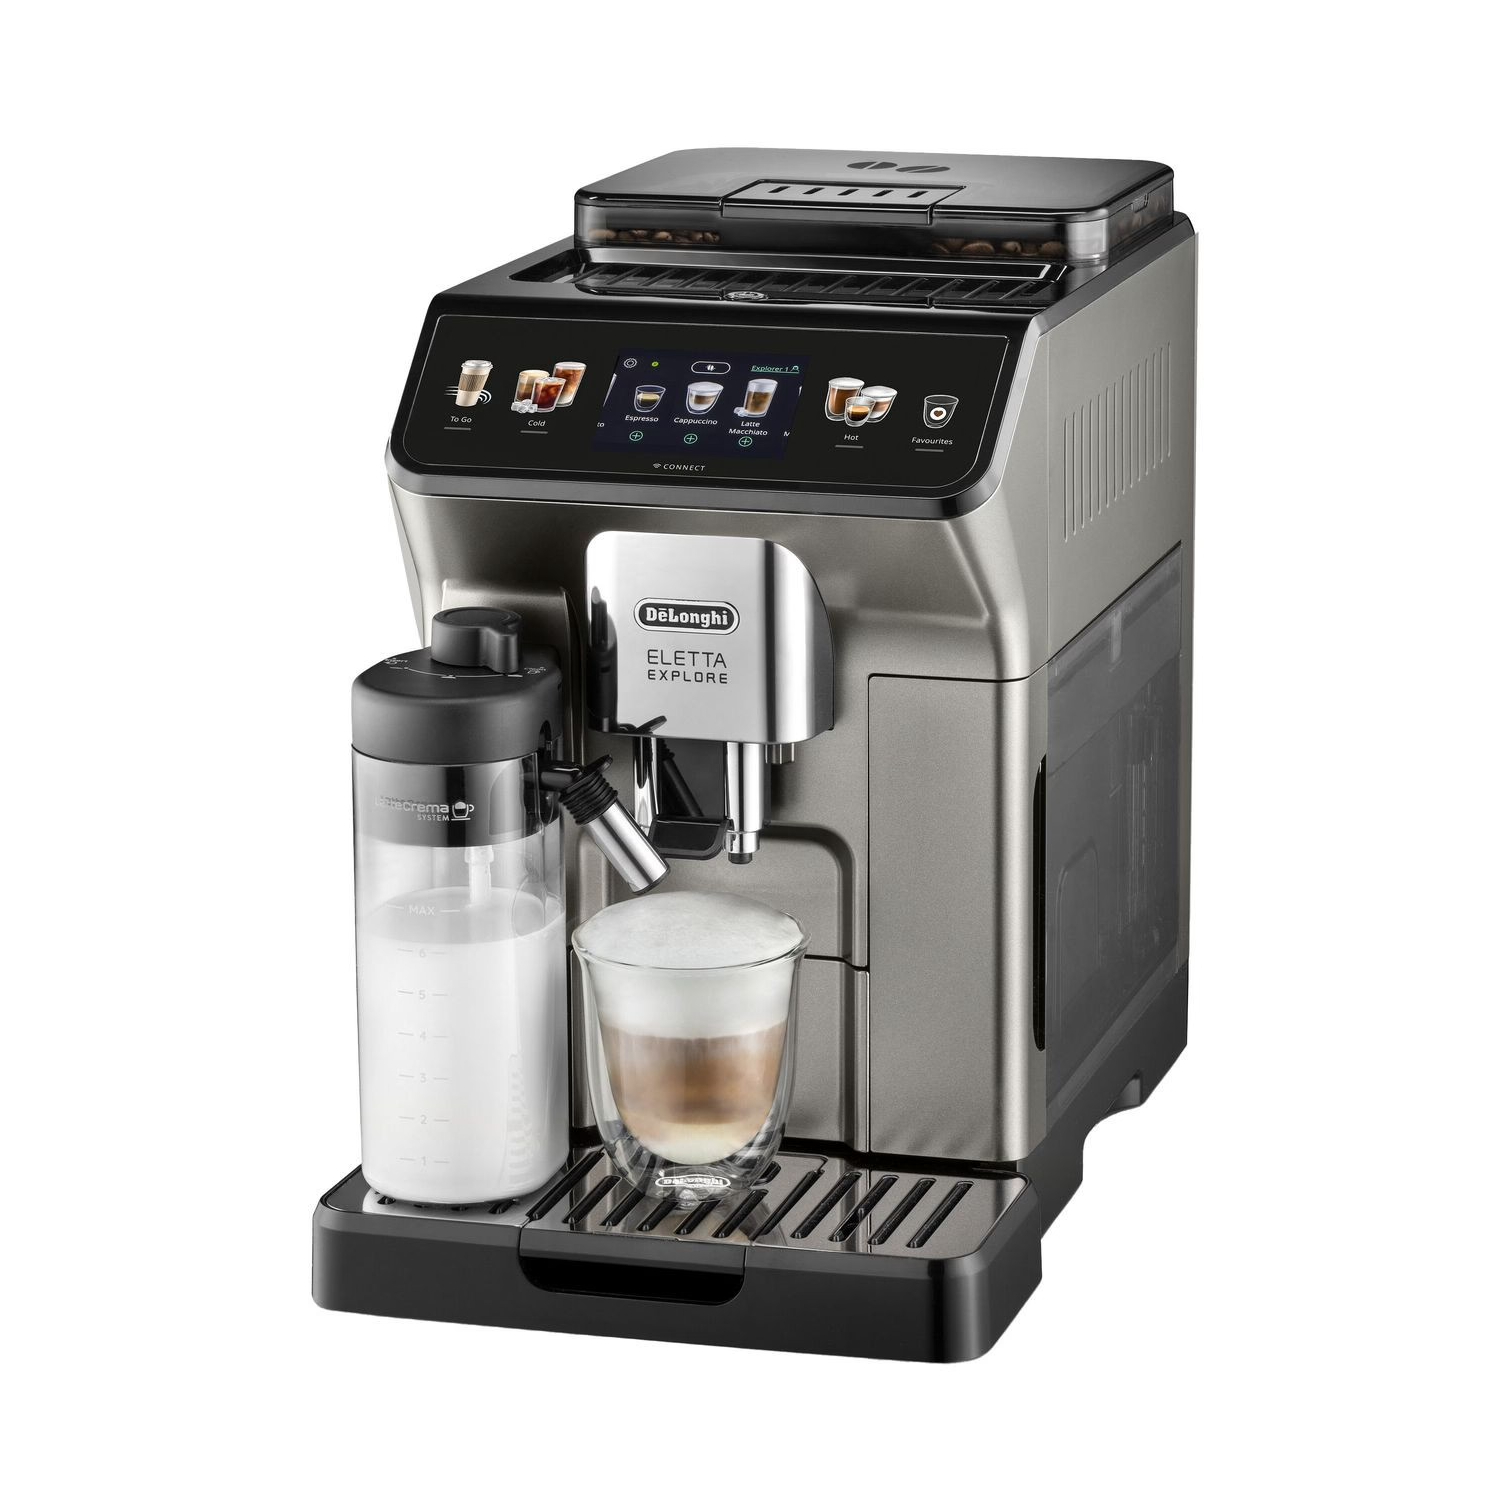 Автоматическая кофемашина DeLonghi Eletta Explore ECAM450.76.T, серебристый/черный кроссовки ekonika mocasines crema